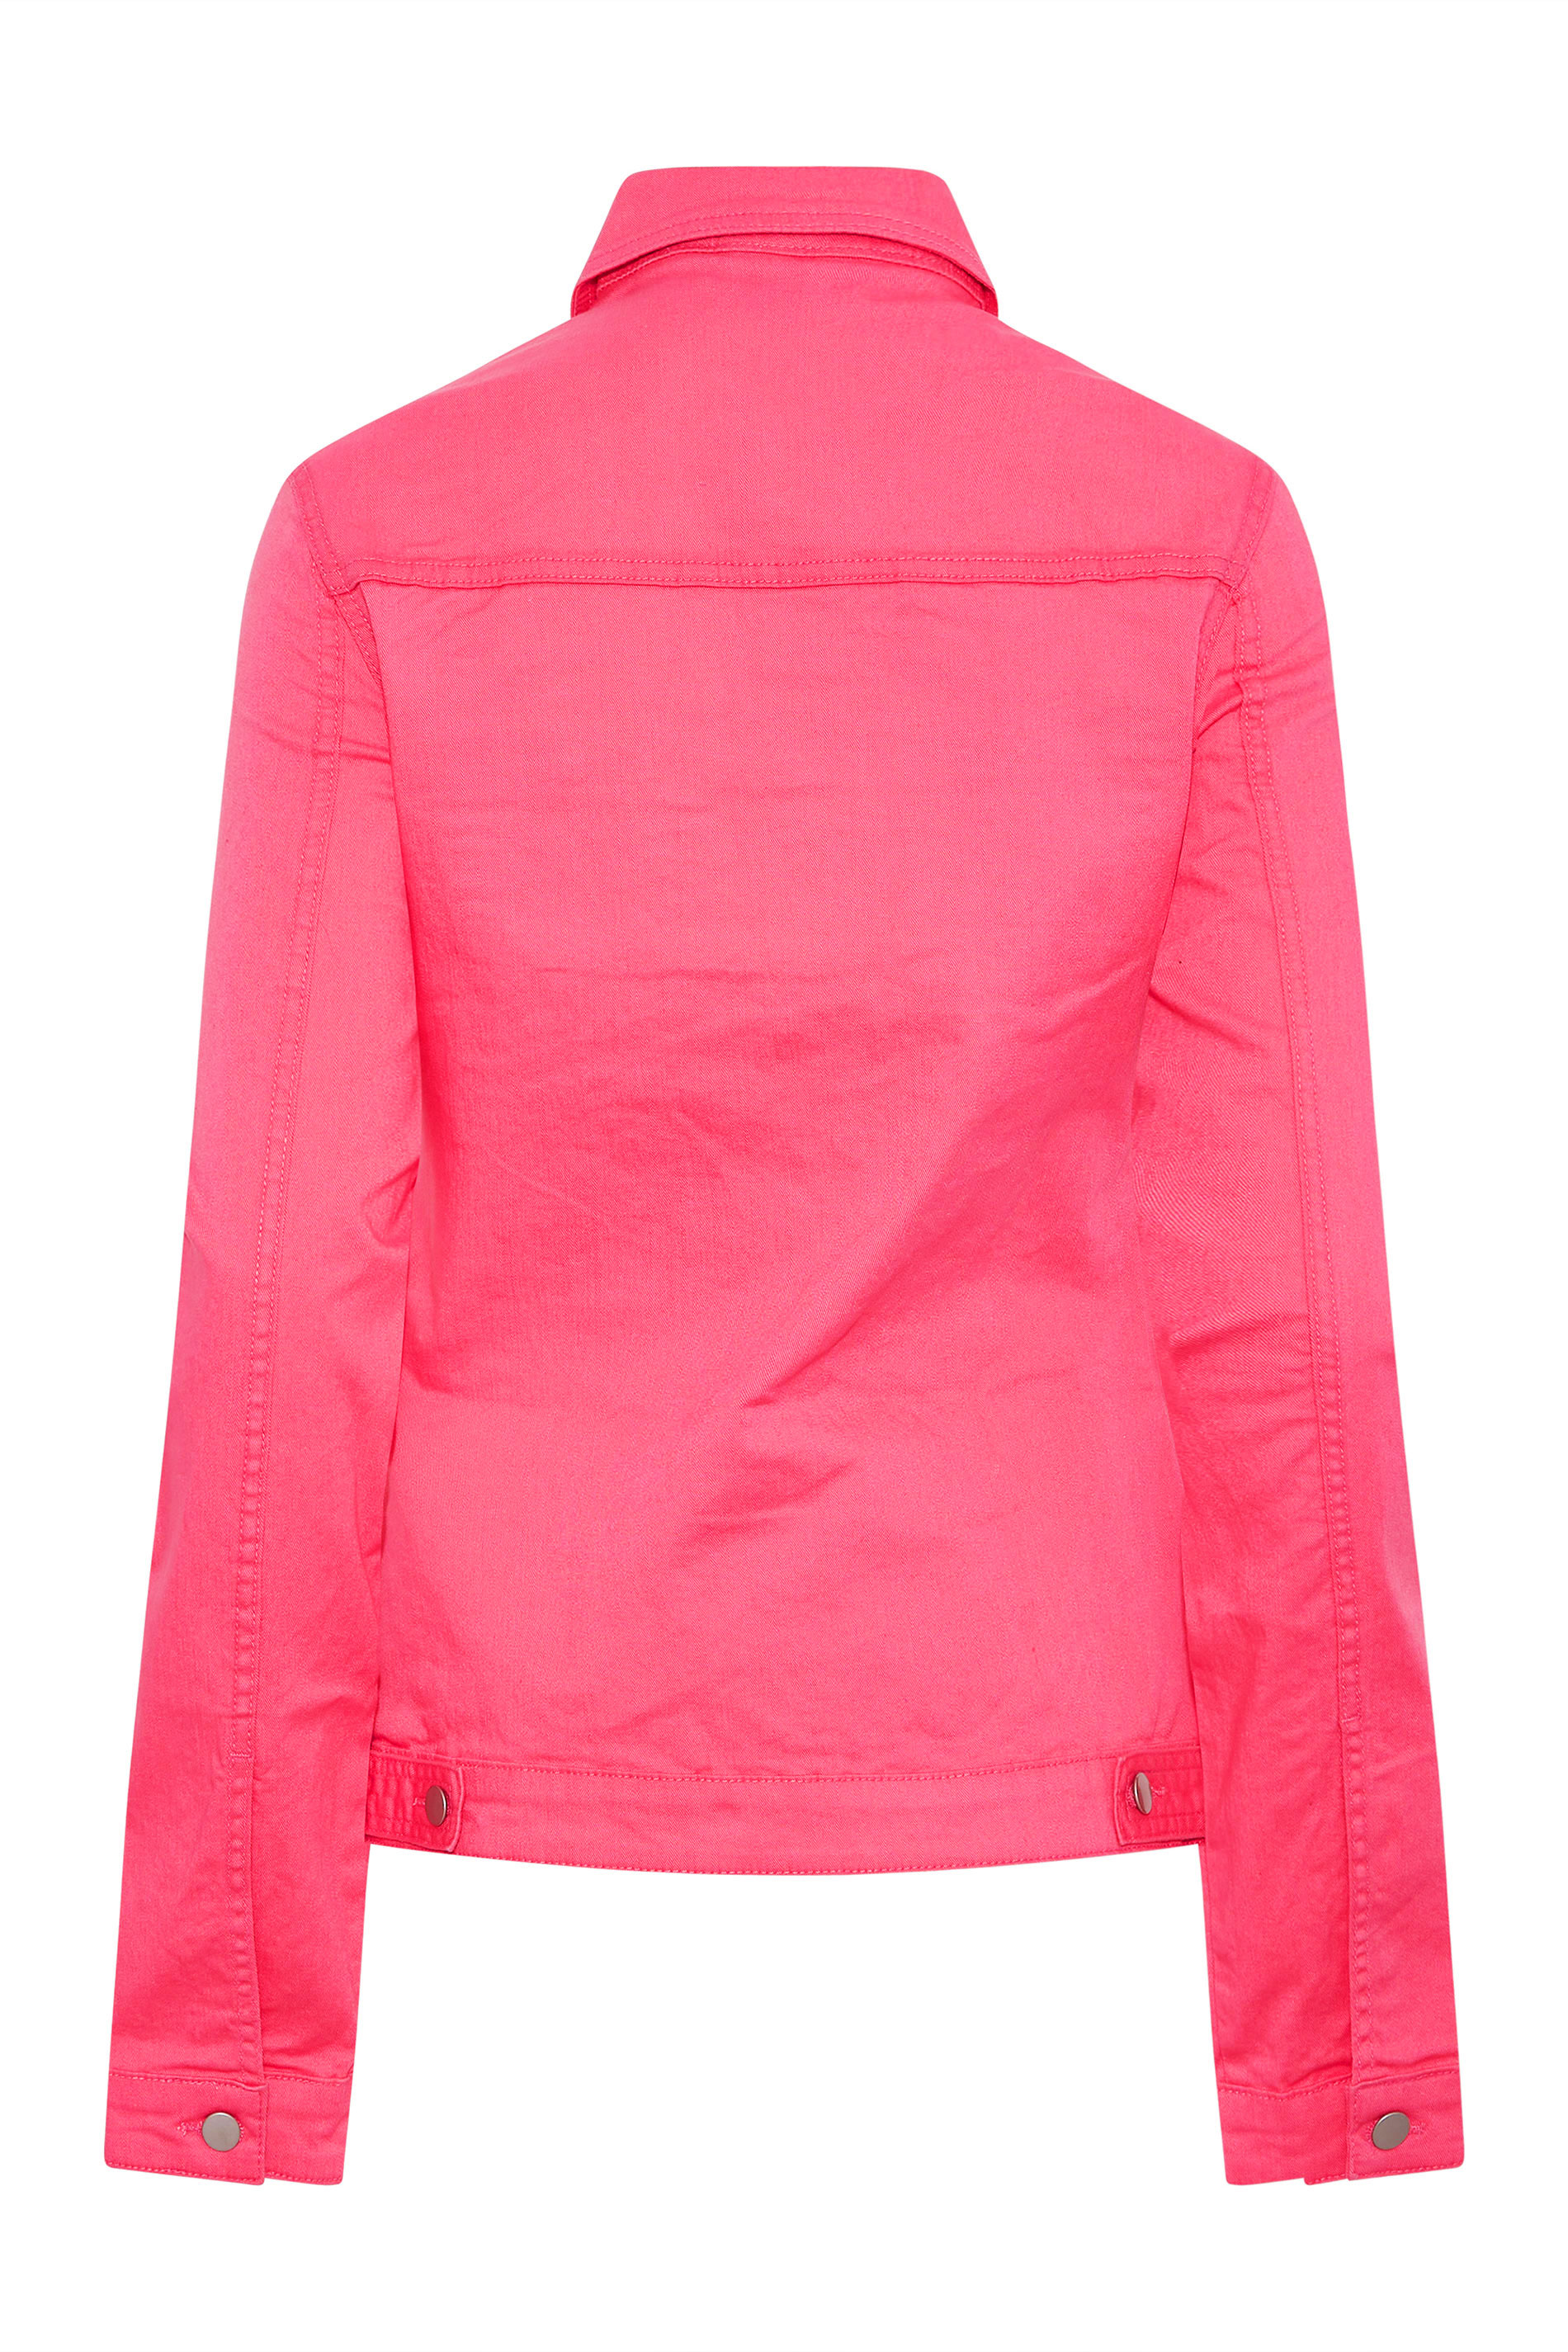 Women's Pink Wash Short Button Up Ladies' Denim Jacket – Threadbare